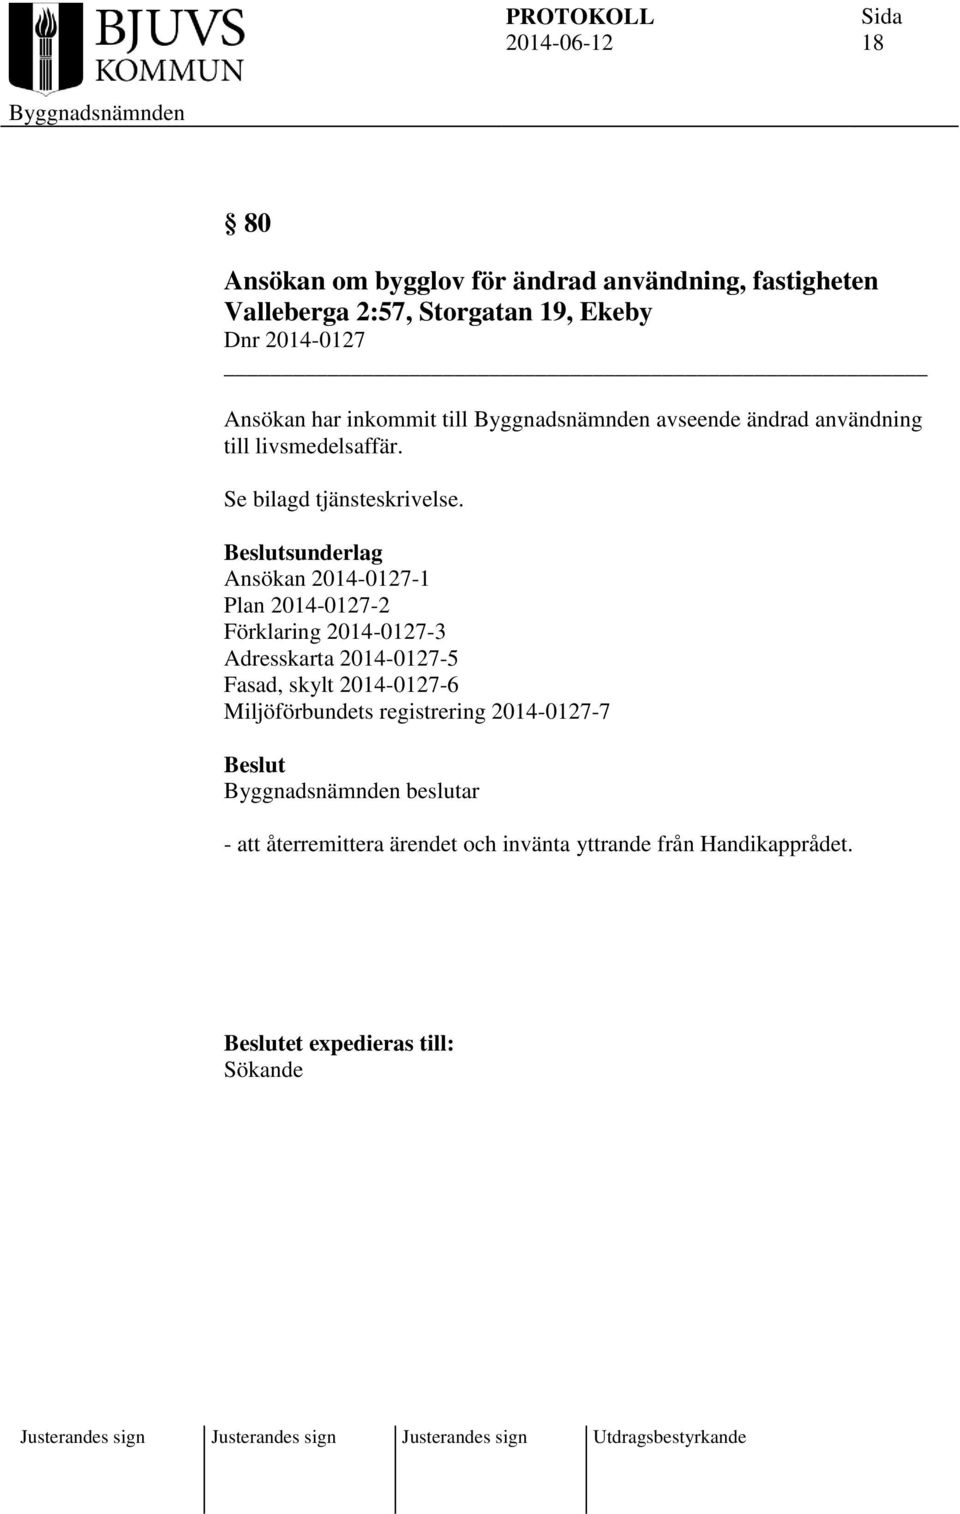 sunderlag Ansökan 2014-0127-1 Plan 2014-0127-2 Förklaring 2014-0127-3 Adresskarta 2014-0127-5 Fasad, skylt 2014-0127-6